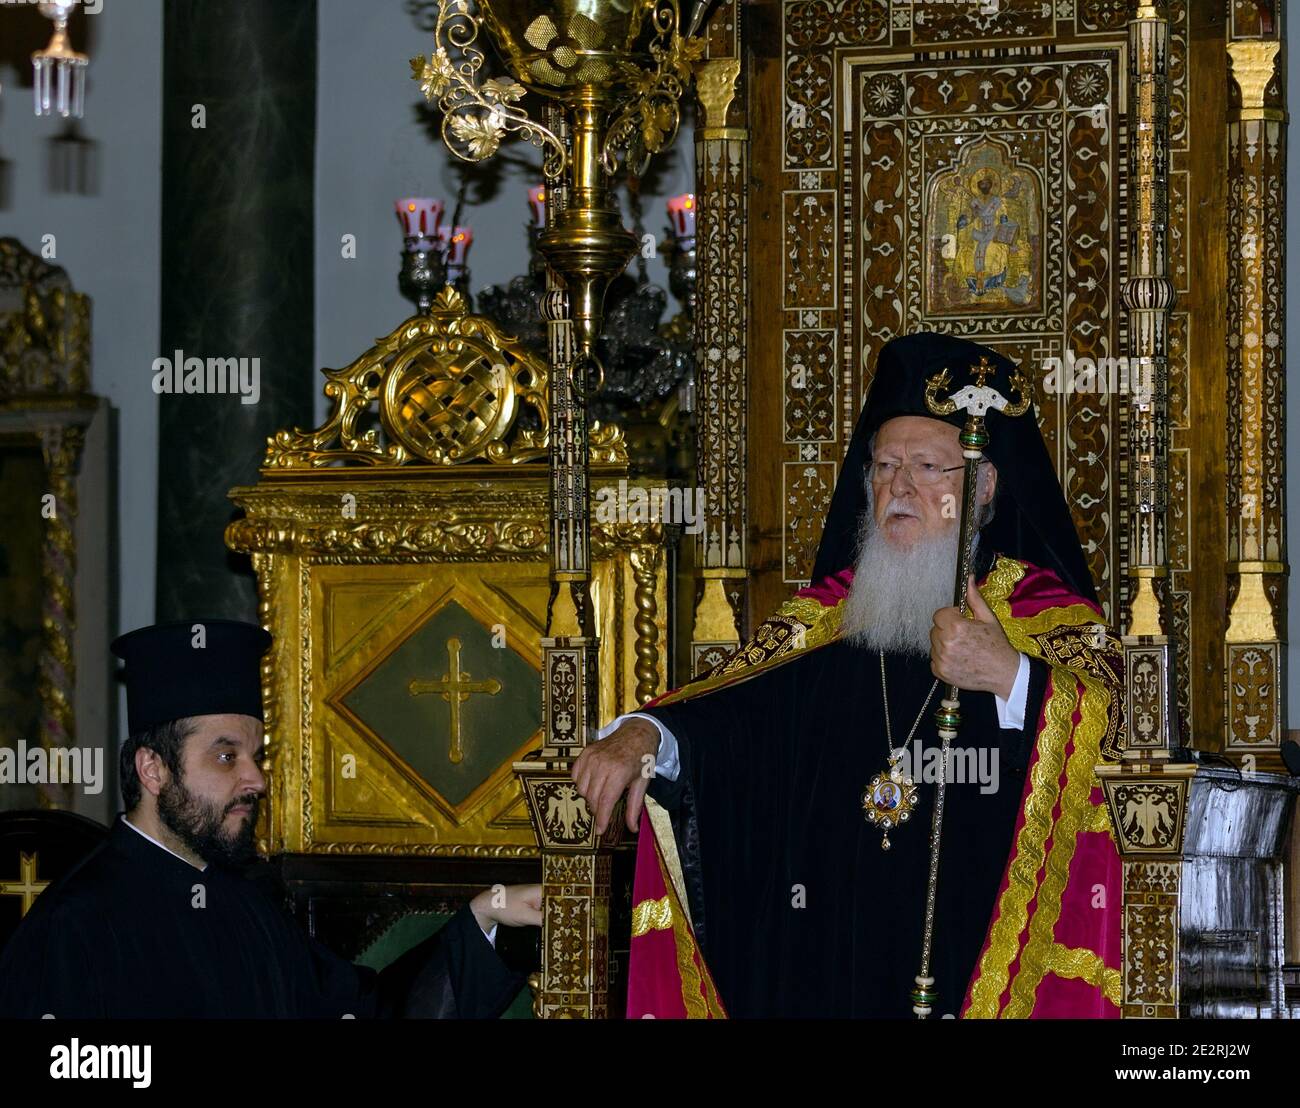 ISTANBUL, TURCHIA - 30 DICEMBRE 2012: Il Patriarca Bartolomeo i, Patriarca Ecumenico di Costantinopoli, partecipa alla liturgia nella Chiesa Patriarcale. Foto Stock